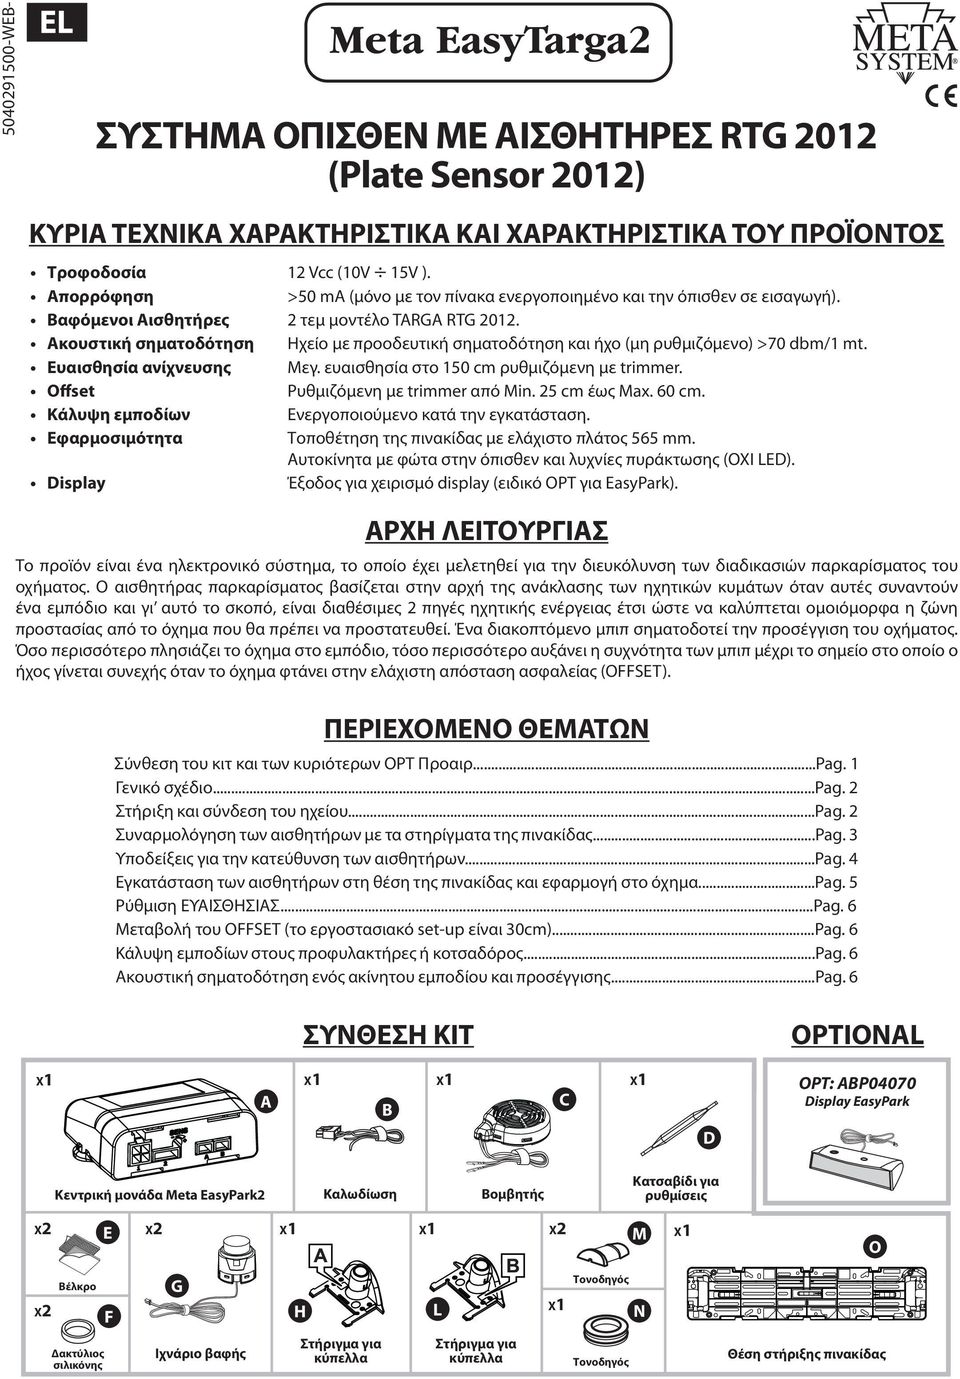 Ακουστική σηματοδότηση Ηχείο με προοδευτική σηματοδότηση και ήχο (μη ρυθμιζόμενο) >70 dbm/1 mt. Ευαισθησία ανίχνευσης Μεγ. ευαισθησία στο 150 cm ρυθμιζόμενη με trimmer.